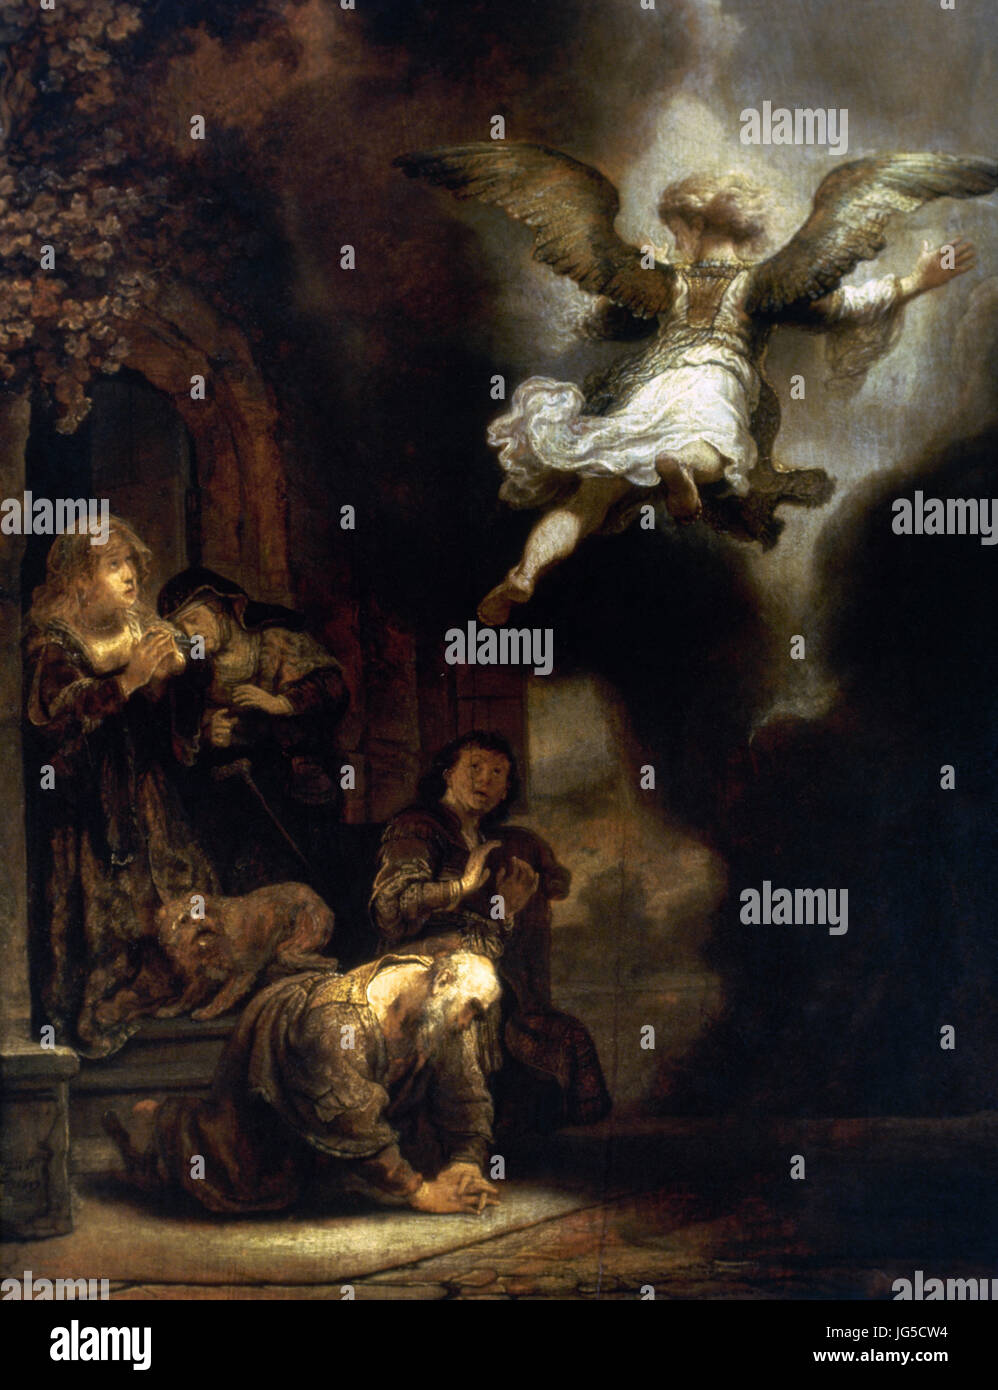 Rembrantdt (1606-1669). Peintre hollandais. L'Archange quittant Tobie et sa famille, 1637. Musée du Louvre. Paris. La France. Banque D'Images